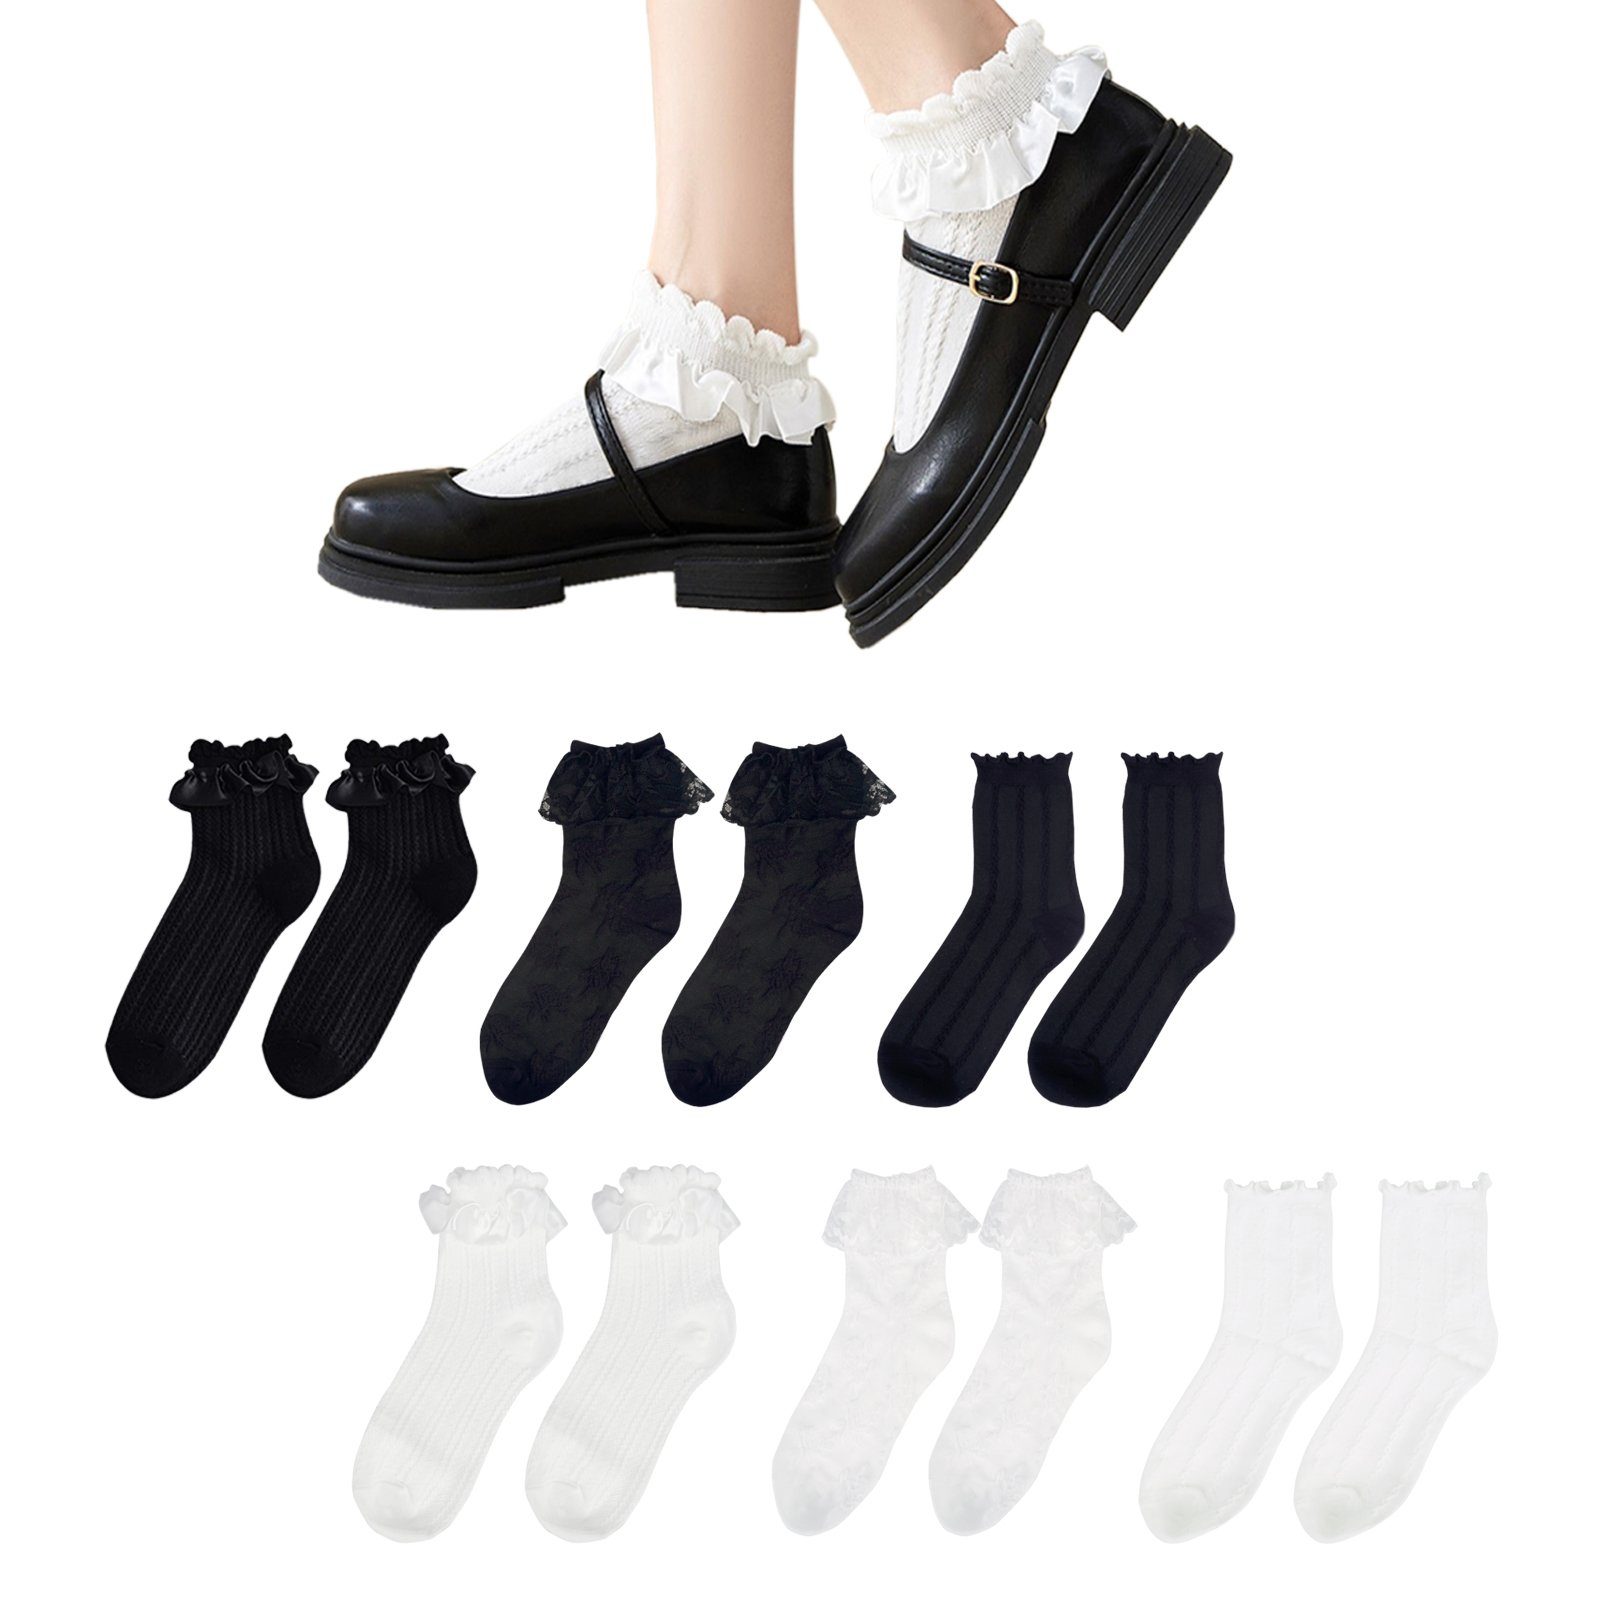 Söckchen GalaxyCat Cosplay mit Cosplaysocken im Strümpfe Japanische Paar, Rüsche Socken, Rüschen, Lolita 6 Lolita Style (6-Paar)